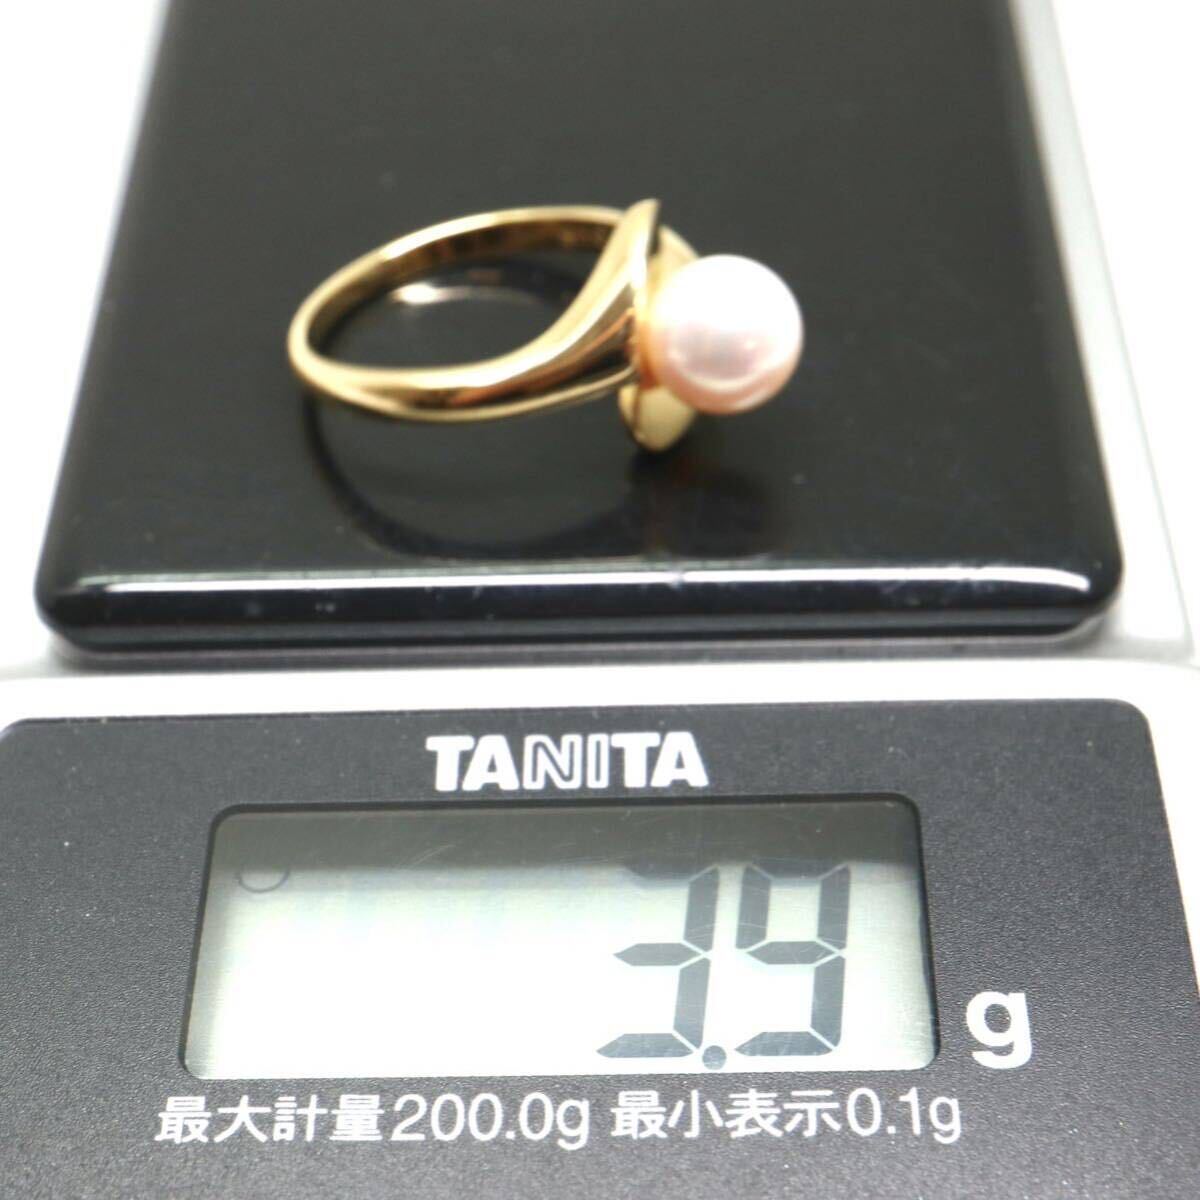 MIKIMOTO(ミキモト)良質!!《K18 アコヤ本真珠リング》A ◎3.9g 約11.5号 pearl パール ring 指輪 jewelry ジュエリー EC1/EC1_画像8